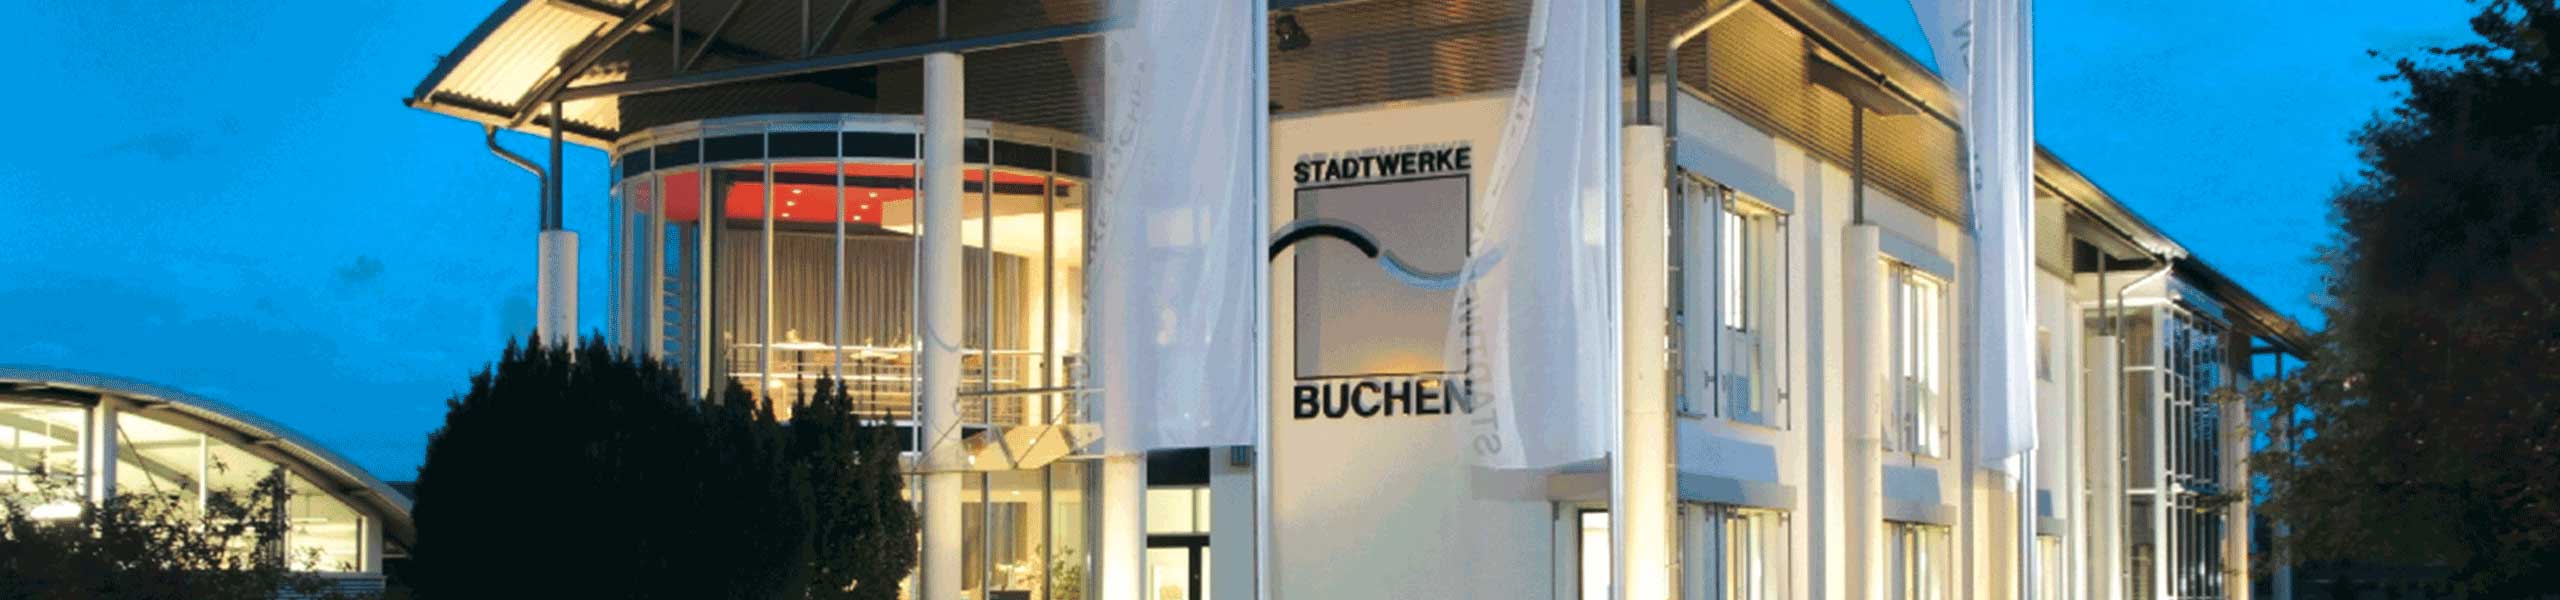 Stadtwerke Buchen GmbH & Co KG - Ihr Versorger vor Ort - Spartipps